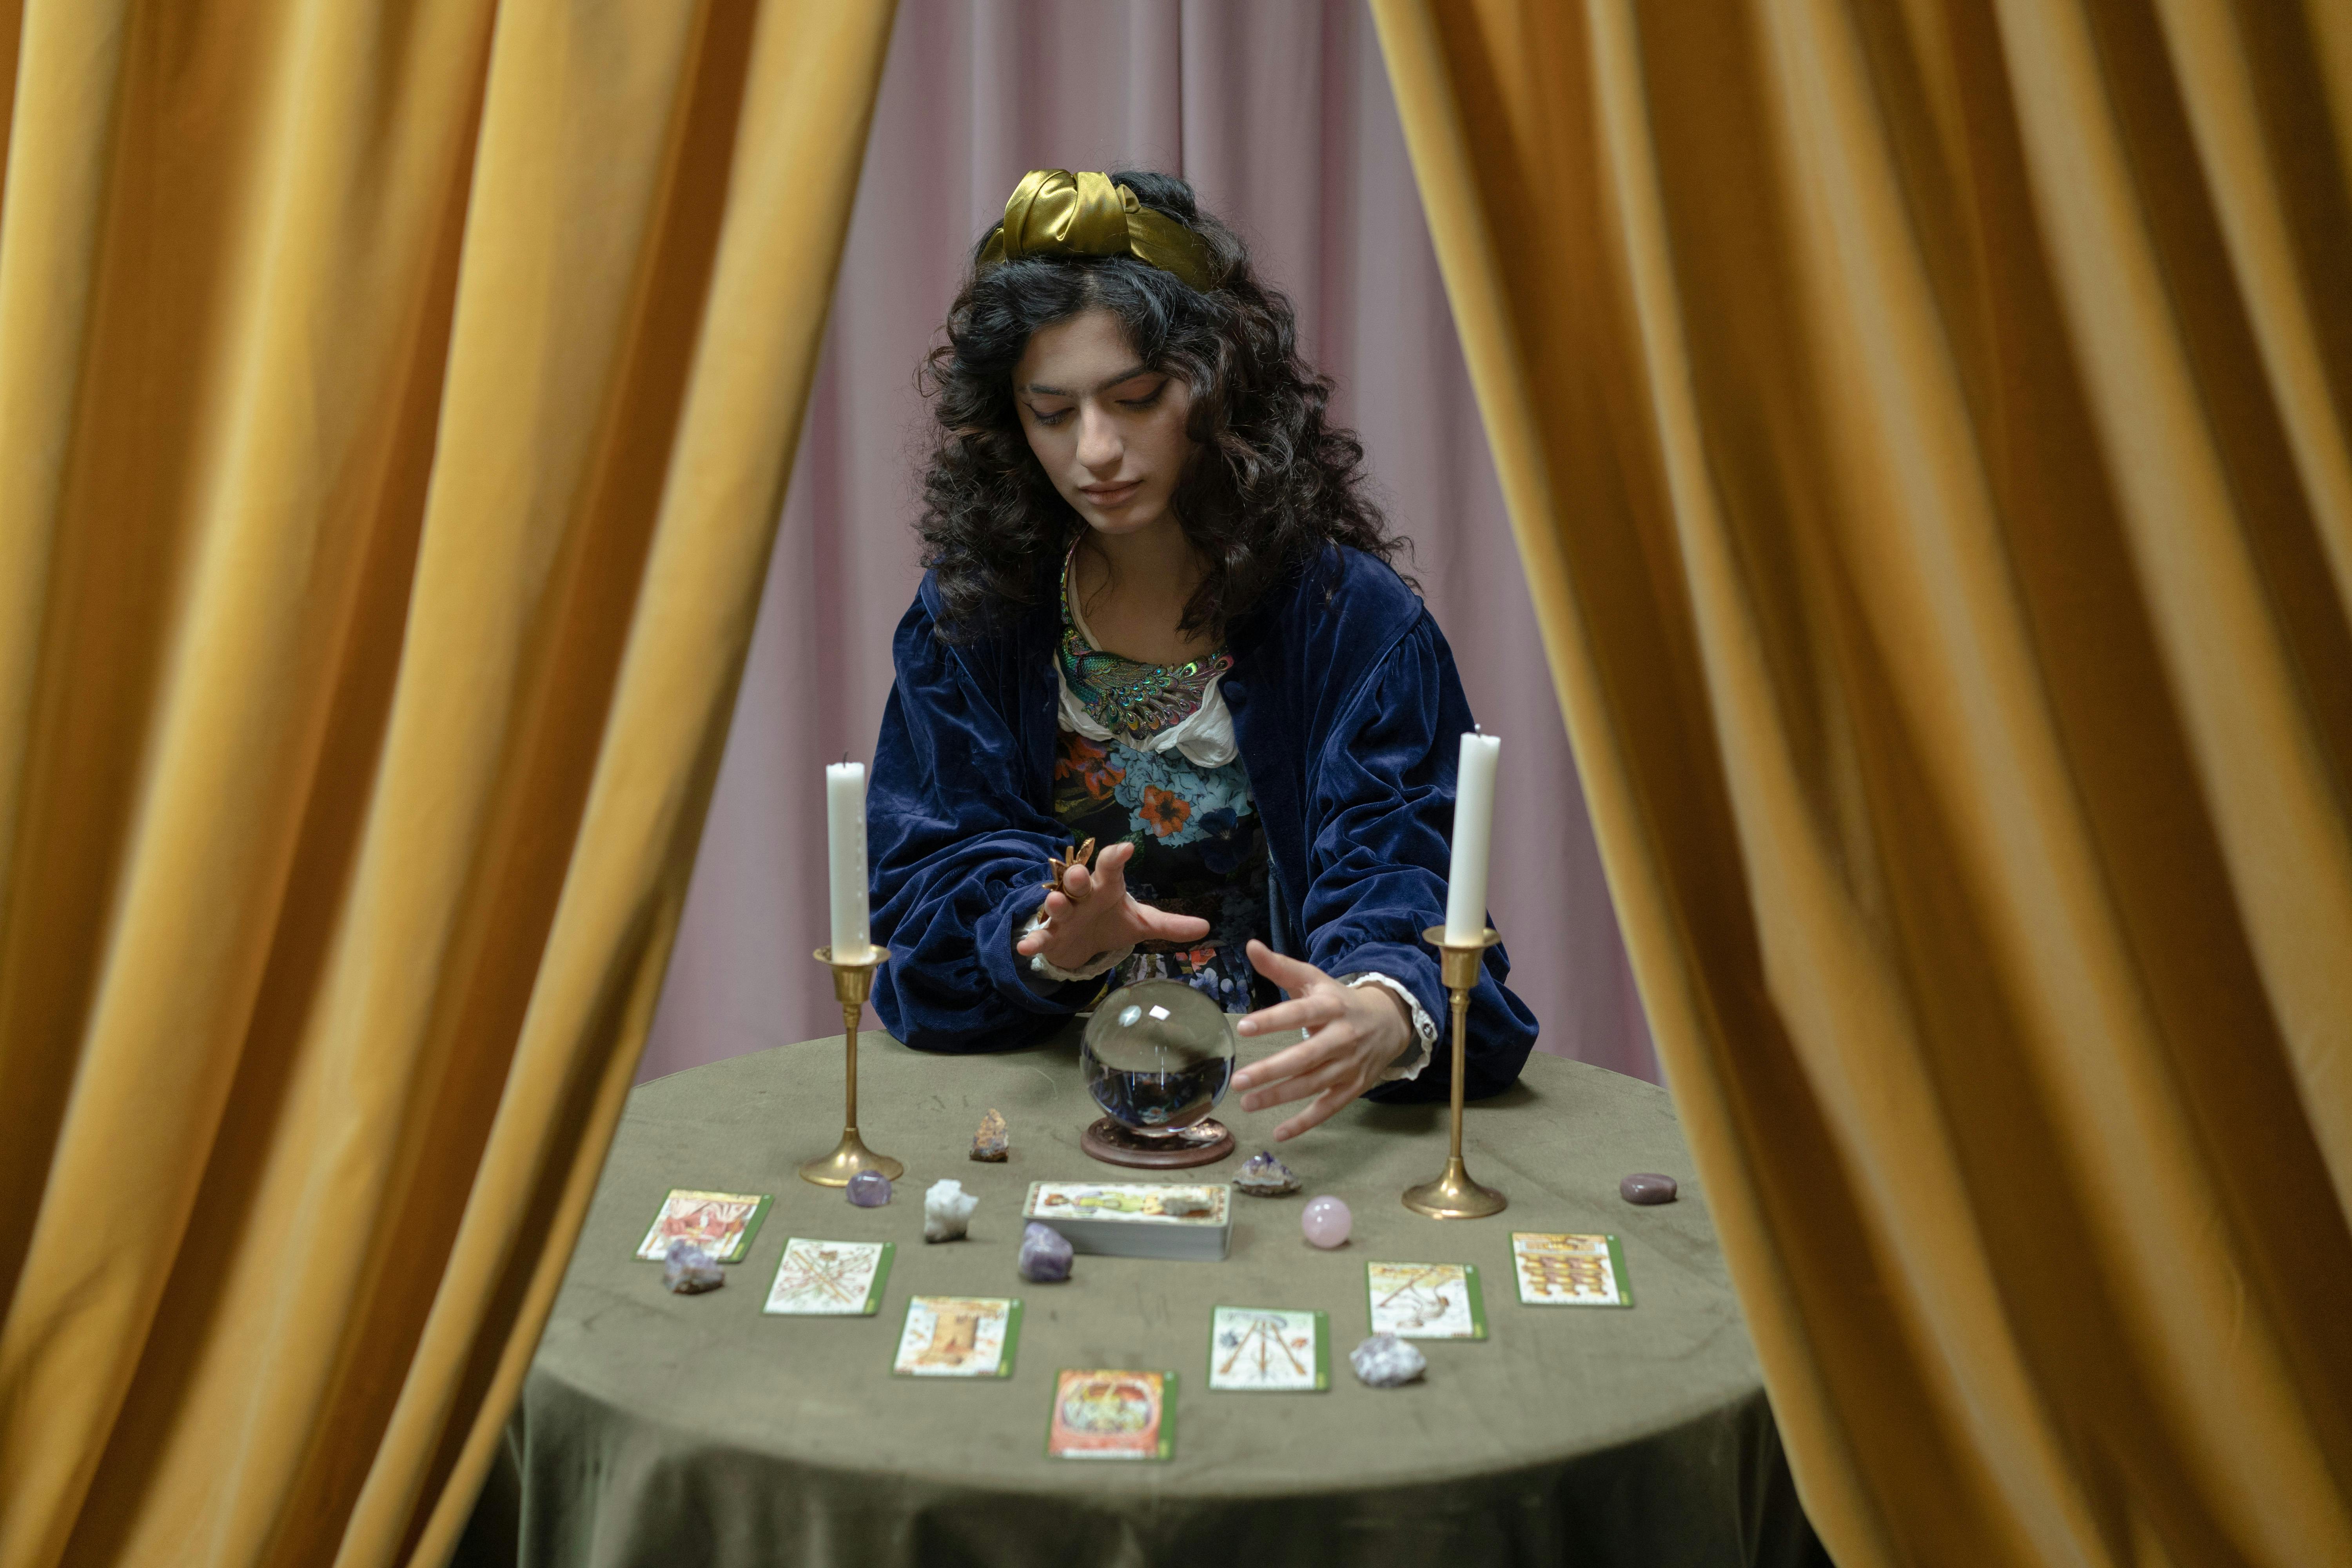 Une cartomancienne assise devant sa boule de cristal et ses cartes de tarot | Source : Pexels